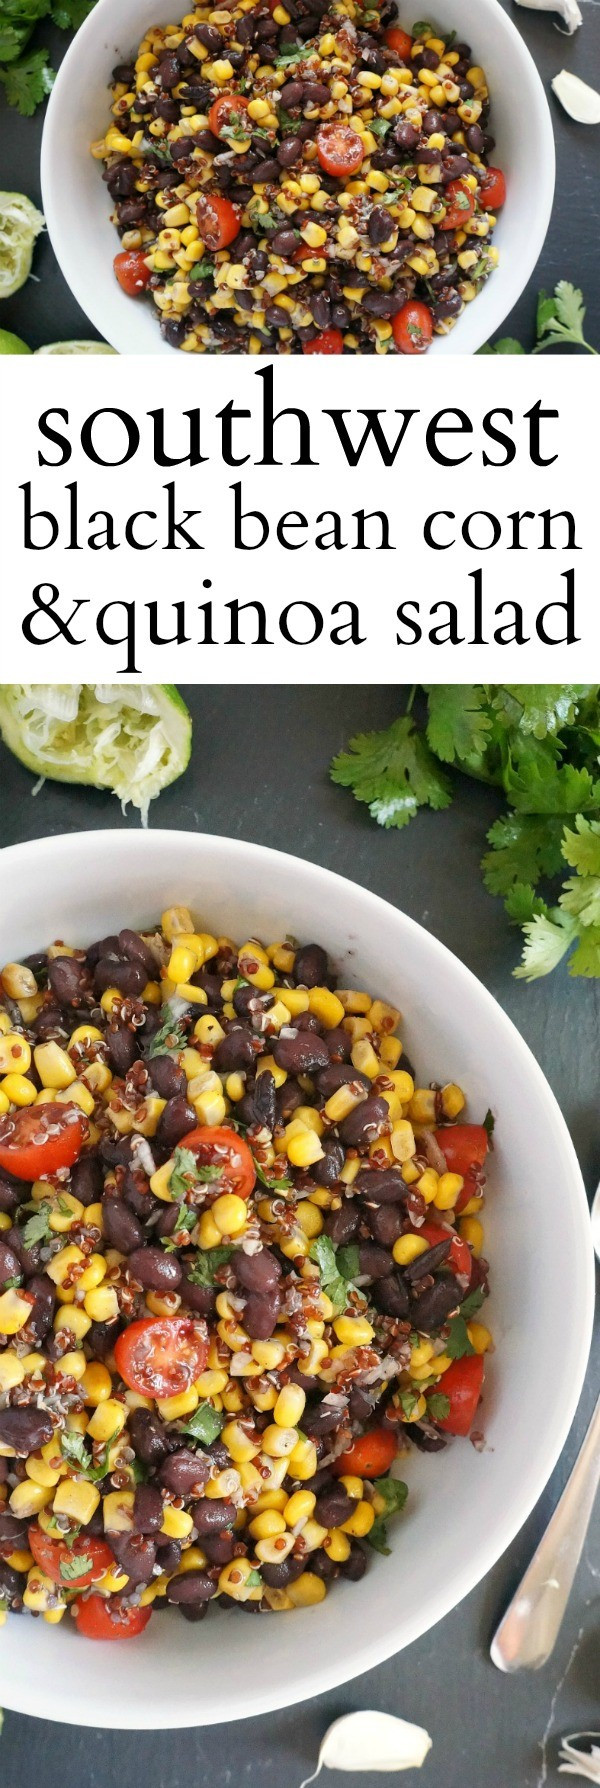 Black Bean Salad Recipes Healthy
 Healthy Southwest Black Bean and Corn Salad Recipe with Quinoa